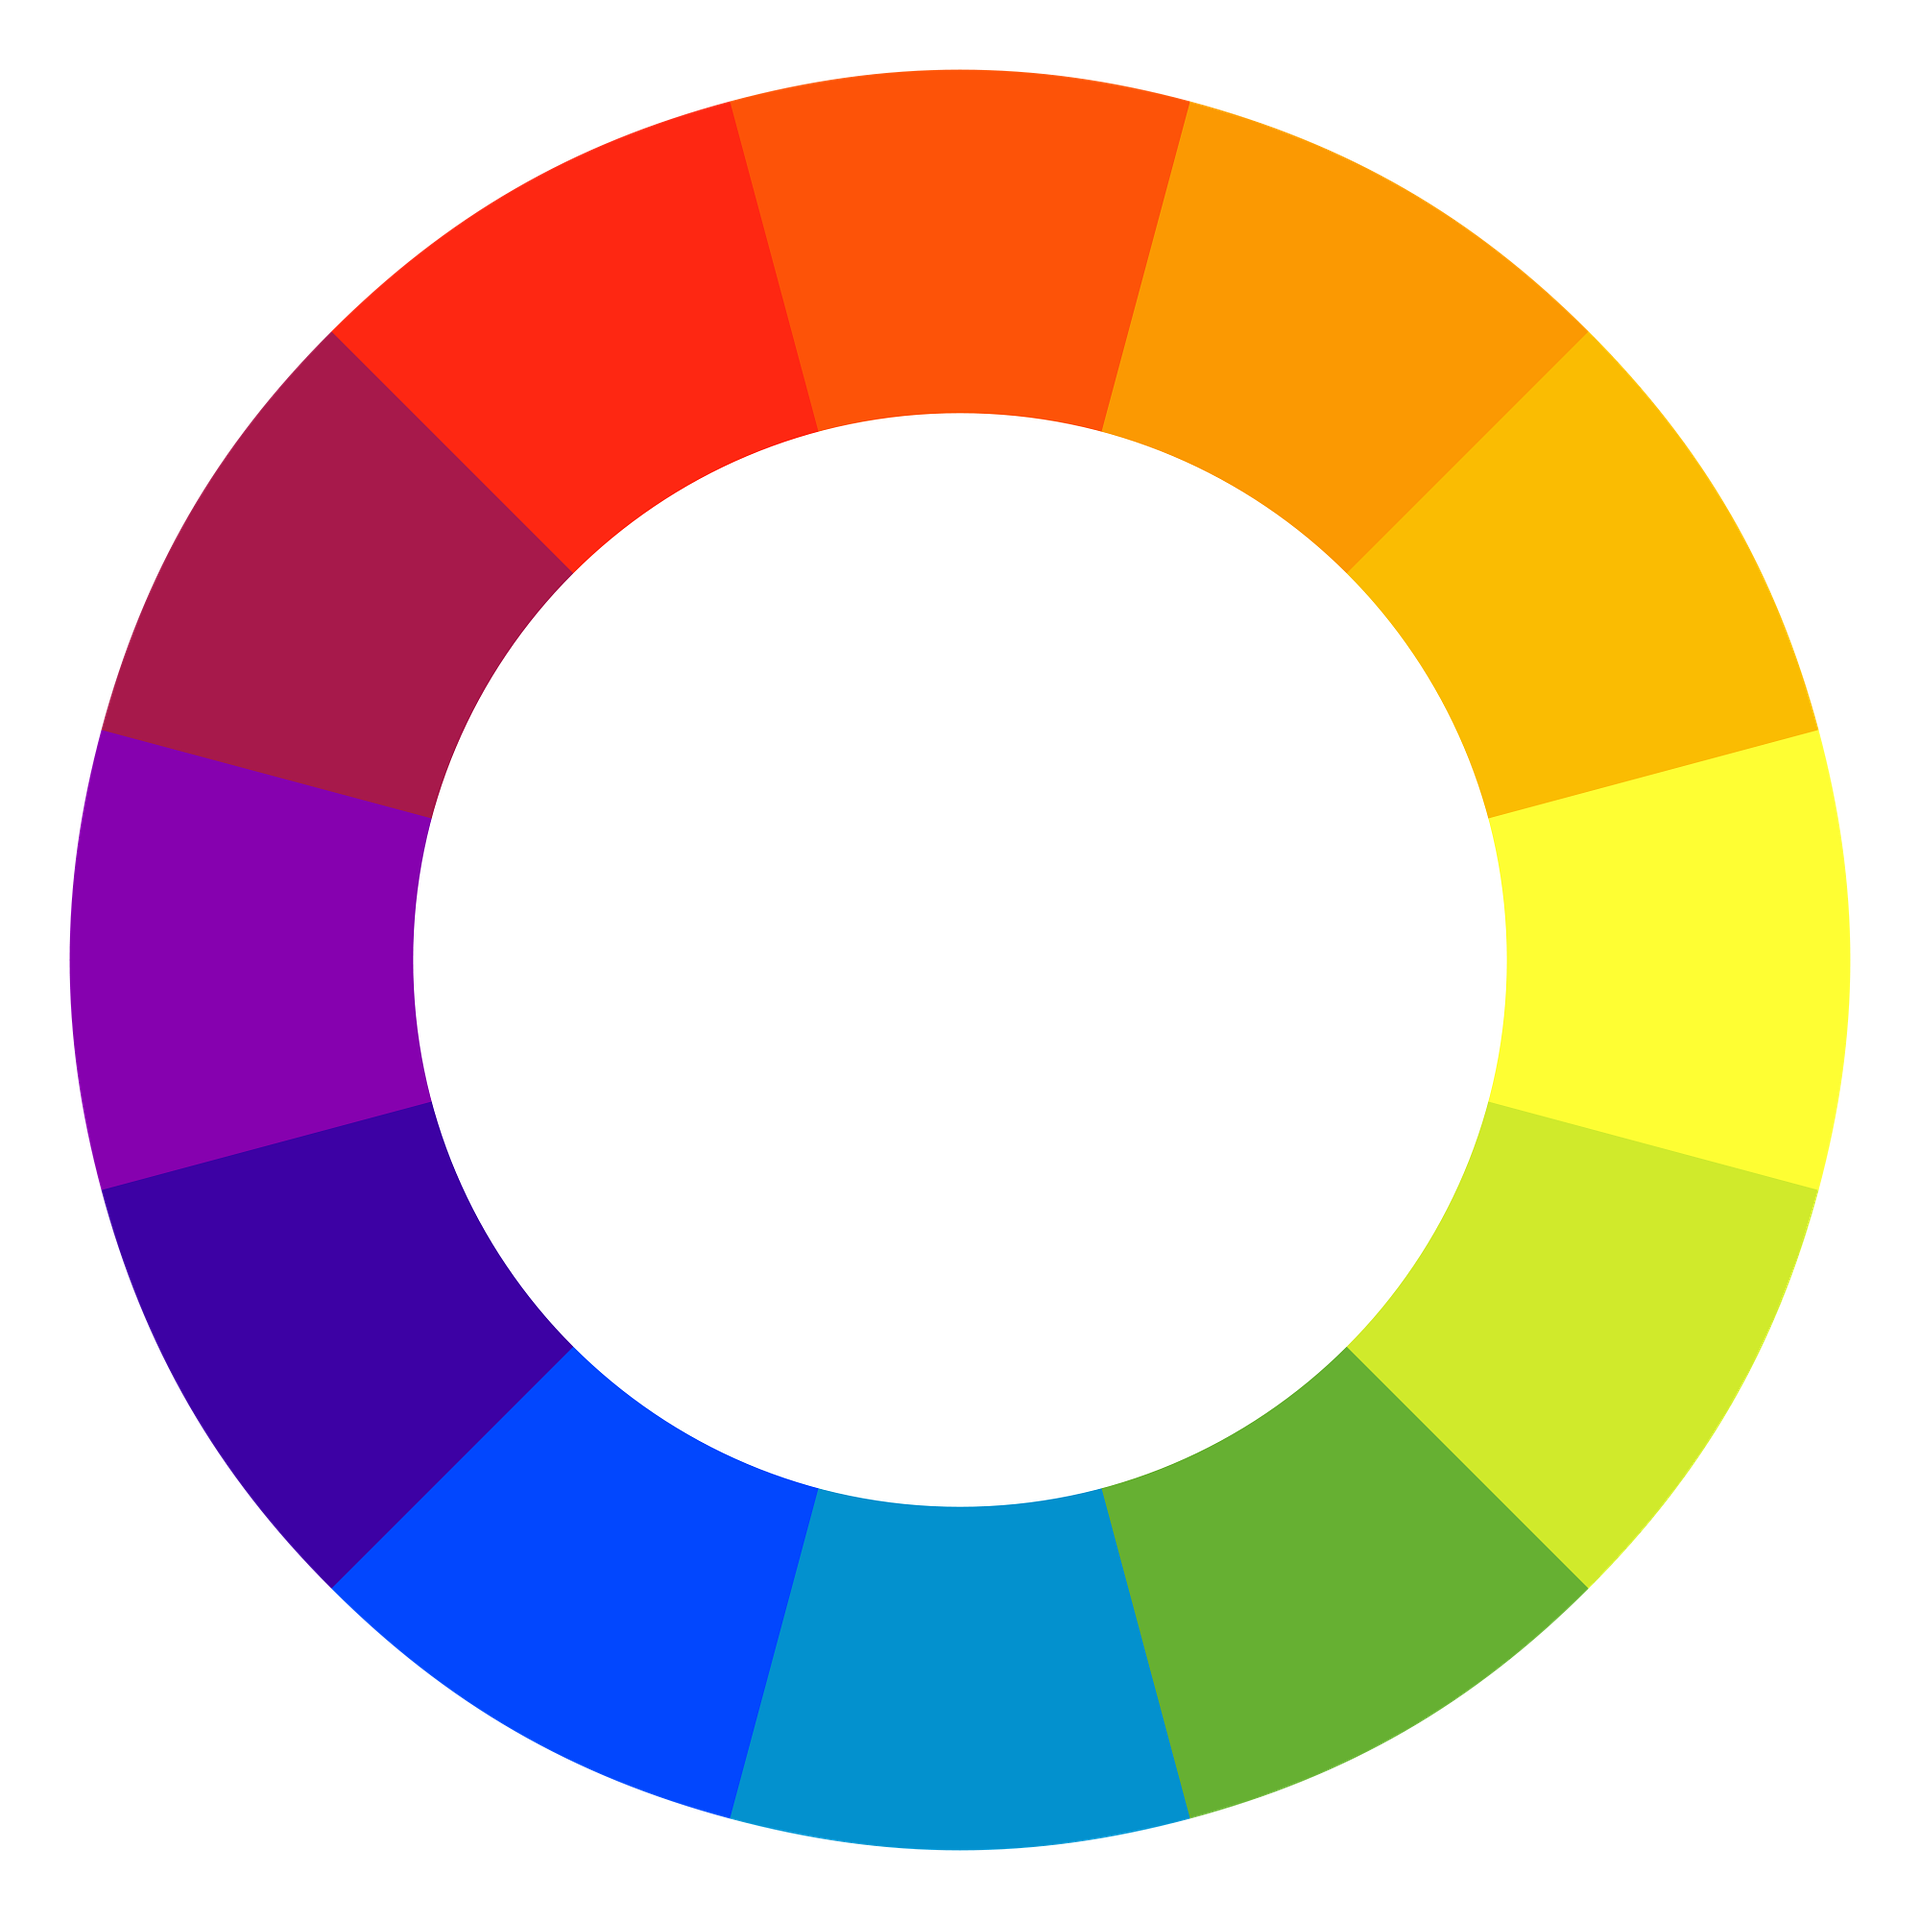 Caractéristiques des couleurs pour les logos